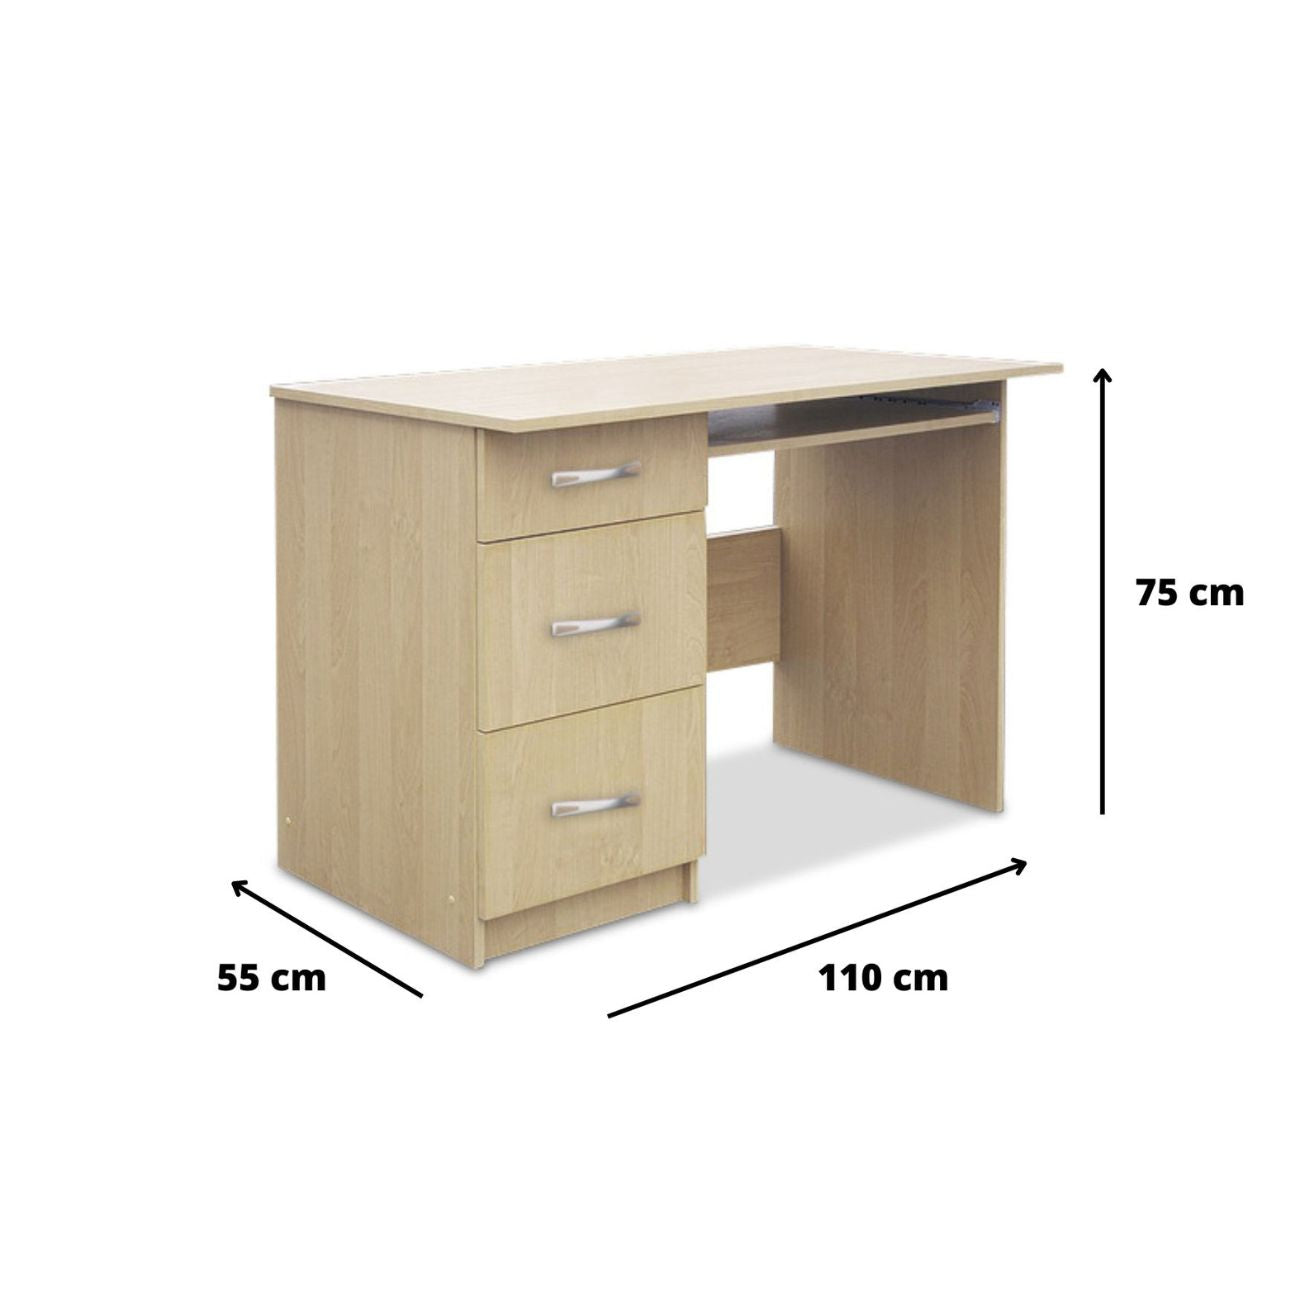 Wymiary małego biurka komputerowego MIKI 110 cm. 3 szuflady są tak dostosowane aby było ono stabilne, a zarazem zajmowało niewiele miejsca w pomieszczeniu.